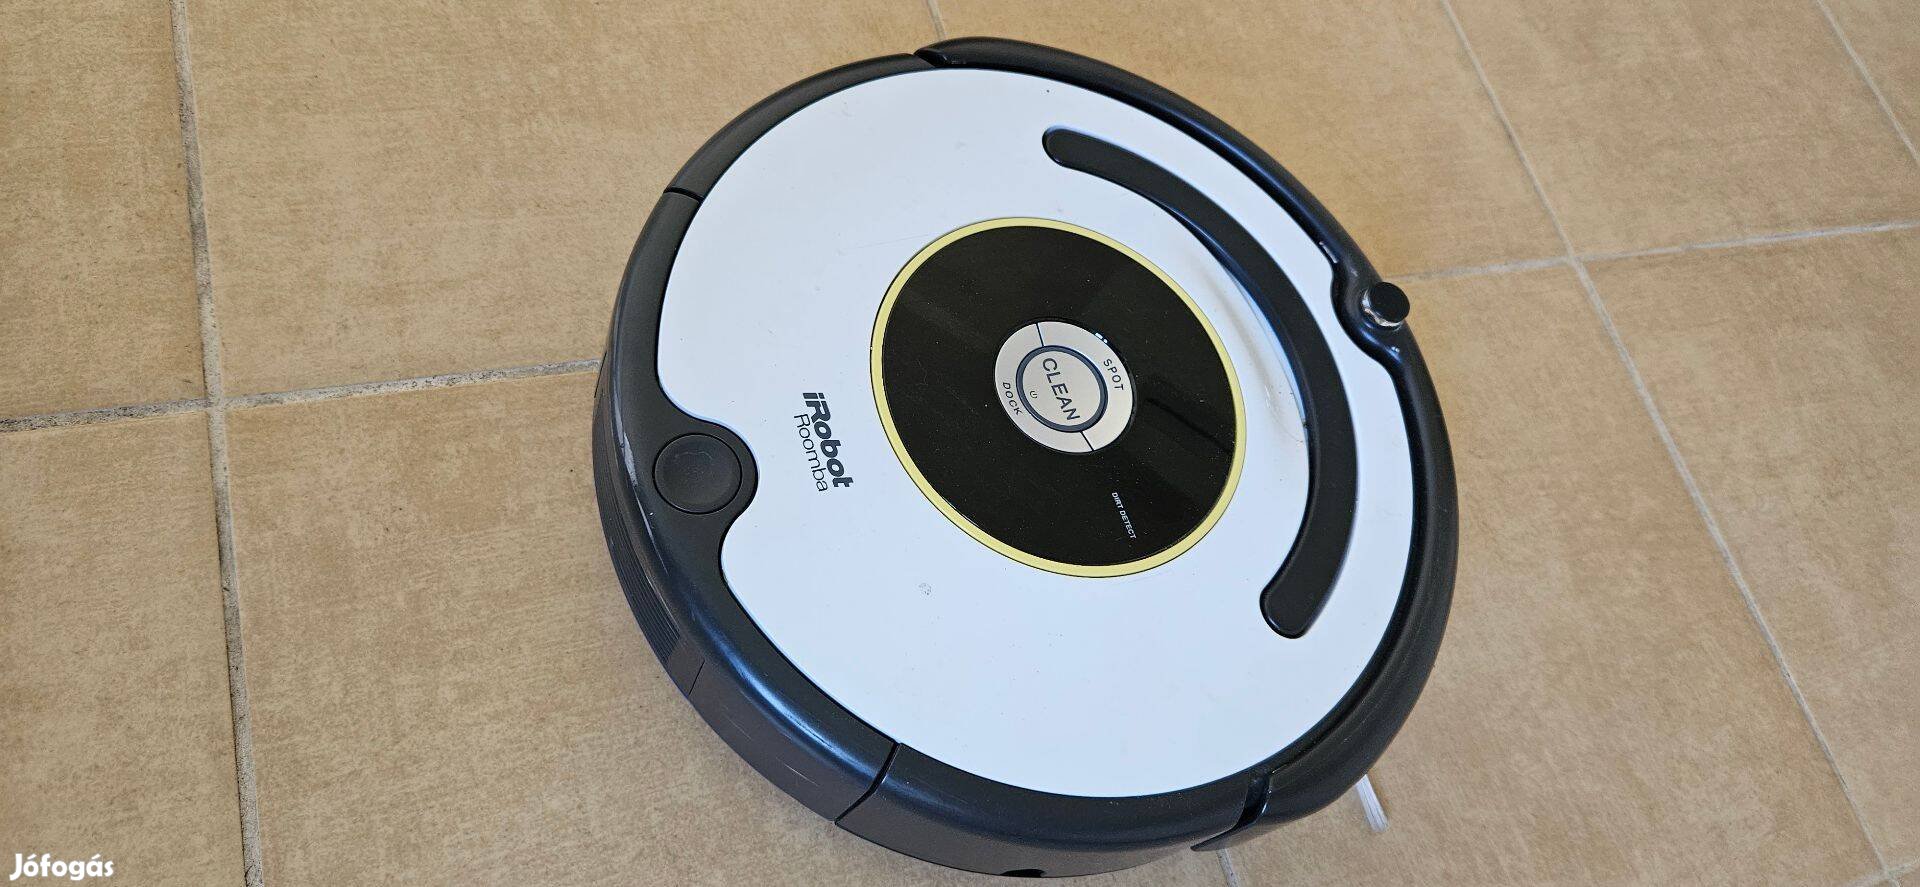 I robot Roomba automata robot padló porszívó takarító tisztító eladó!